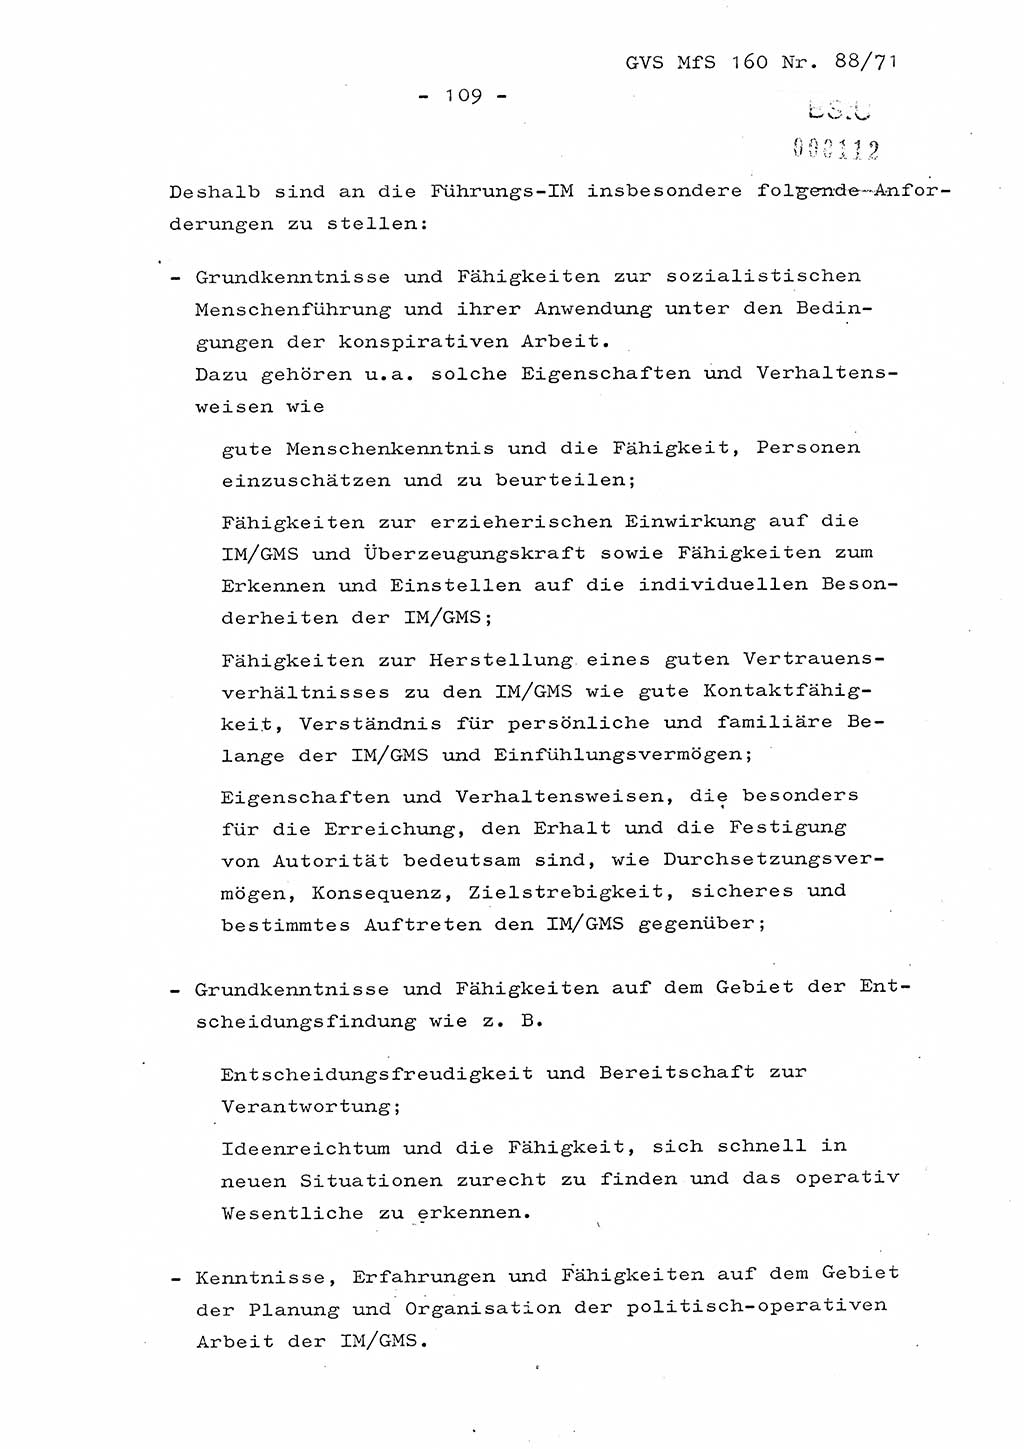 Dissertation Oberstleutnant Josef Schwarz (BV Schwerin), Major Fritz Amm (JHS), Hauptmann Peter Gräßler (JHS), Ministerium für Staatssicherheit (MfS) [Deutsche Demokratische Republik (DDR)], Juristische Hochschule (JHS), Geheime Verschlußsache (GVS) 160-88/71, Potsdam 1972, Seite 109 (Diss. MfS DDR JHS GVS 160-88/71 1972, S. 109)